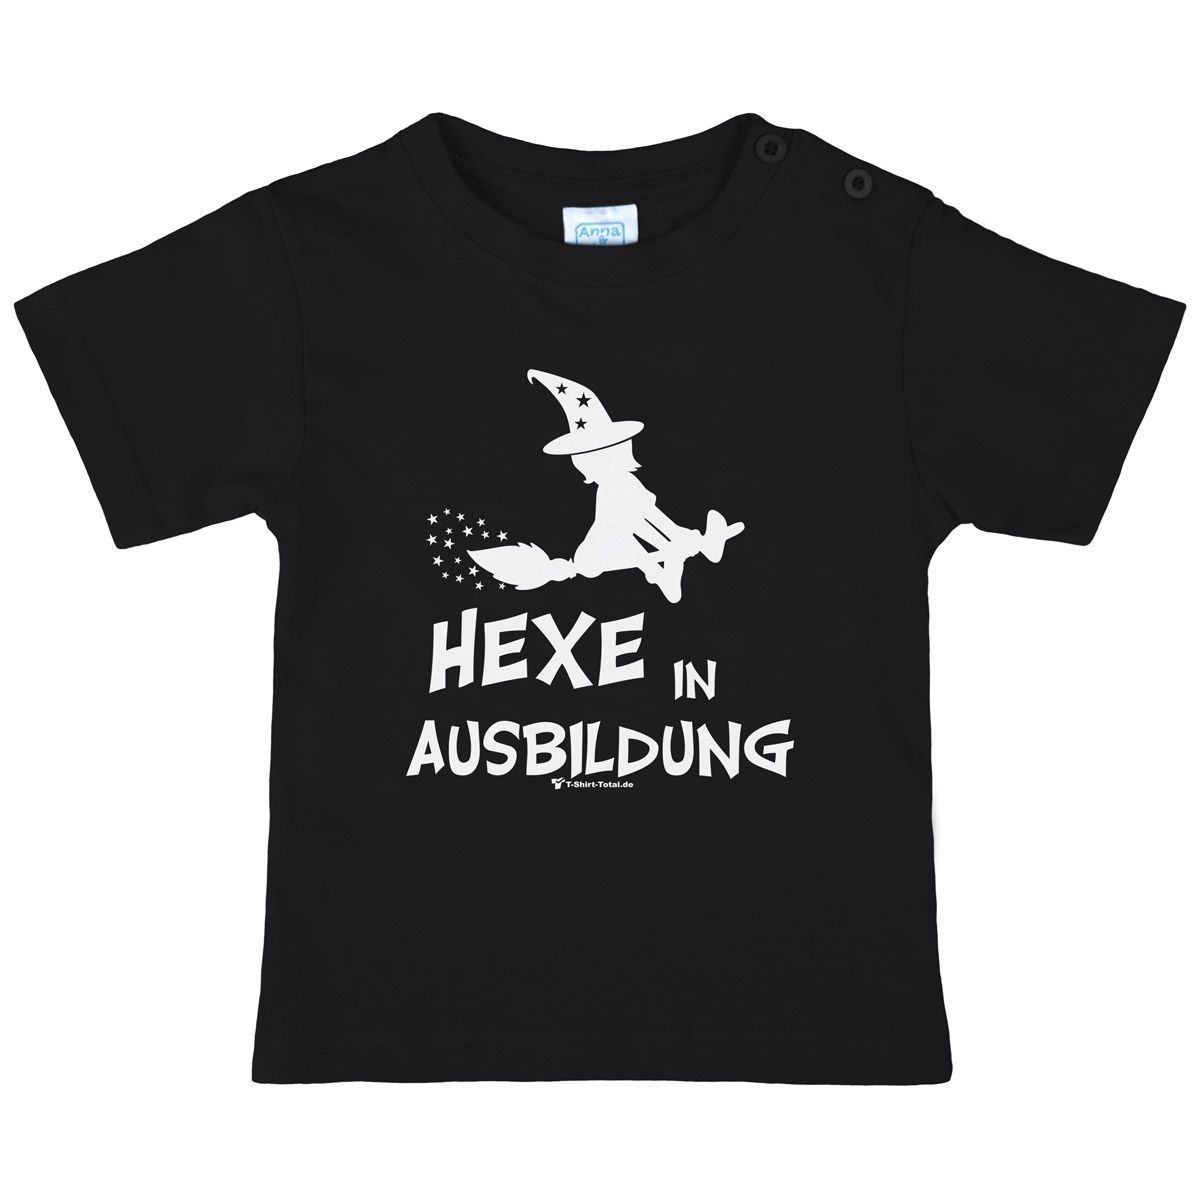 Hexe in Ausbildung Kinder T-Shirt schwarz 110 / 116